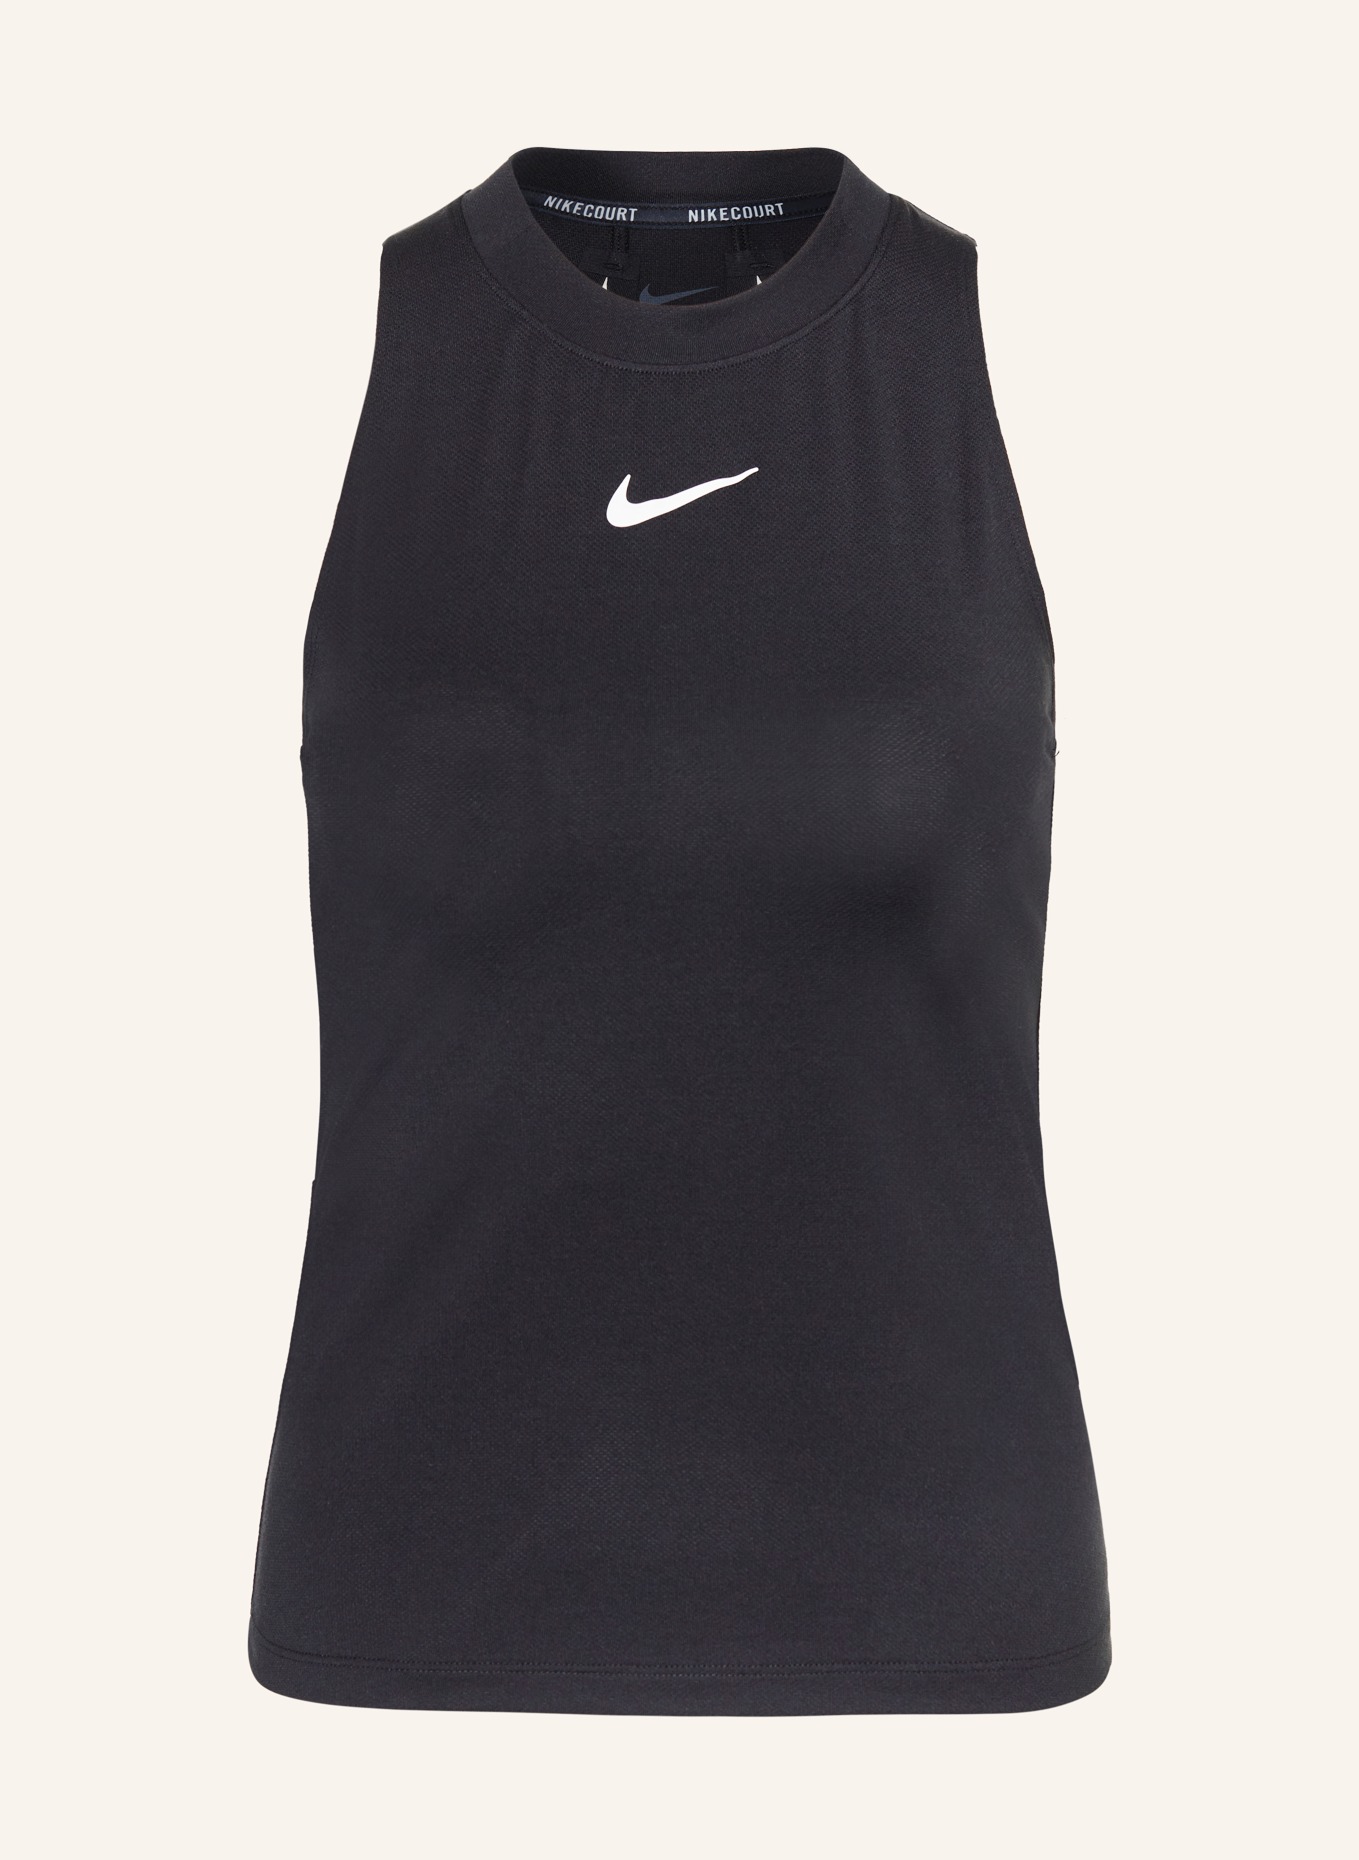 Nike Tank top COURT ADVANTAGE, Color: BLACK (Image 1)